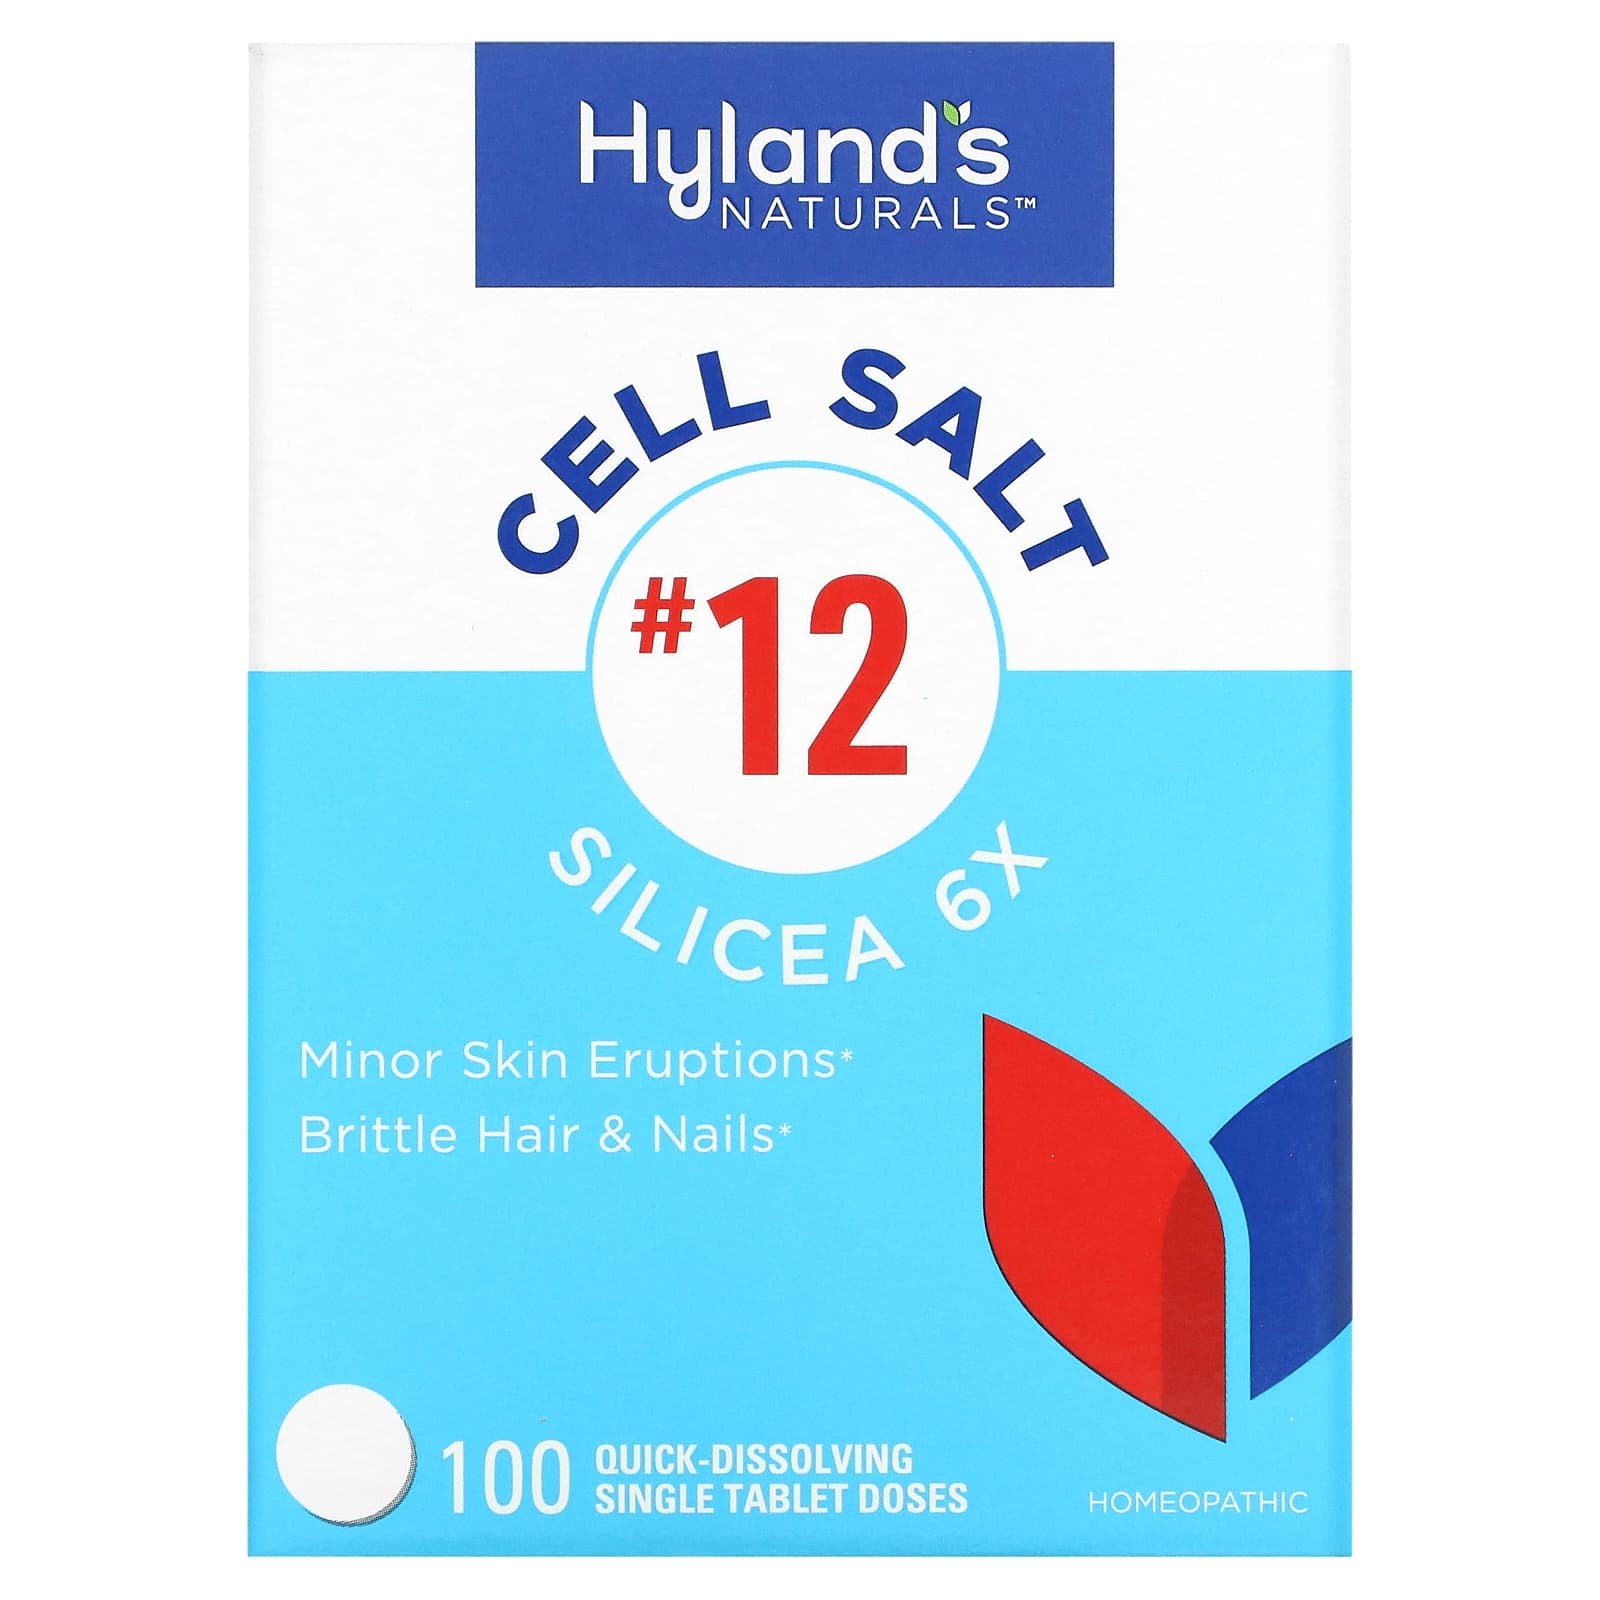 Клеточная Соль №12 / Силицея 6X Hyland's, 100 быстрорастворимых таблеток